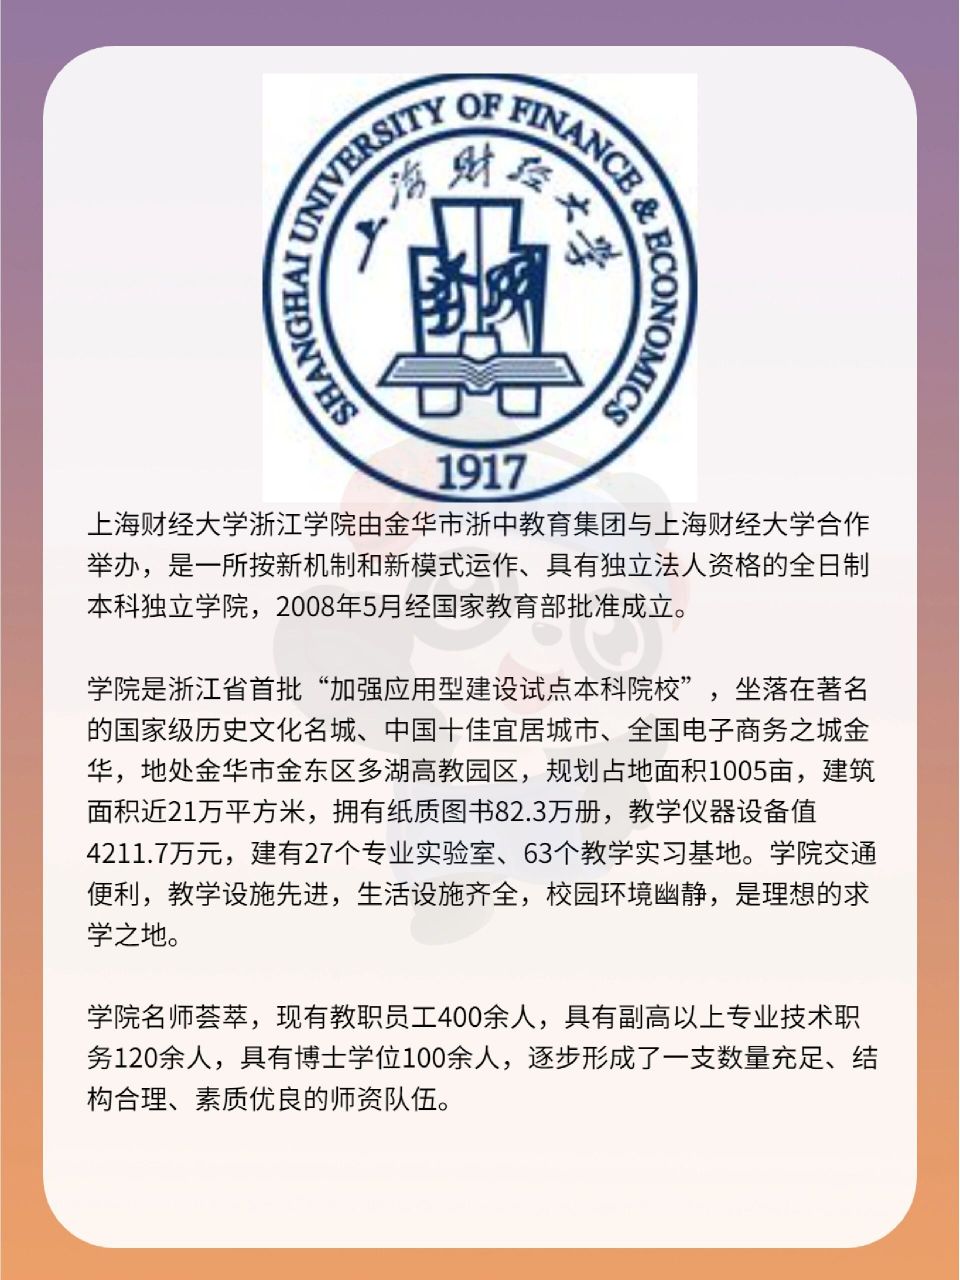 院校介绍 78今日院校:上海财经大学浙江学院23年的招生简章跟22年